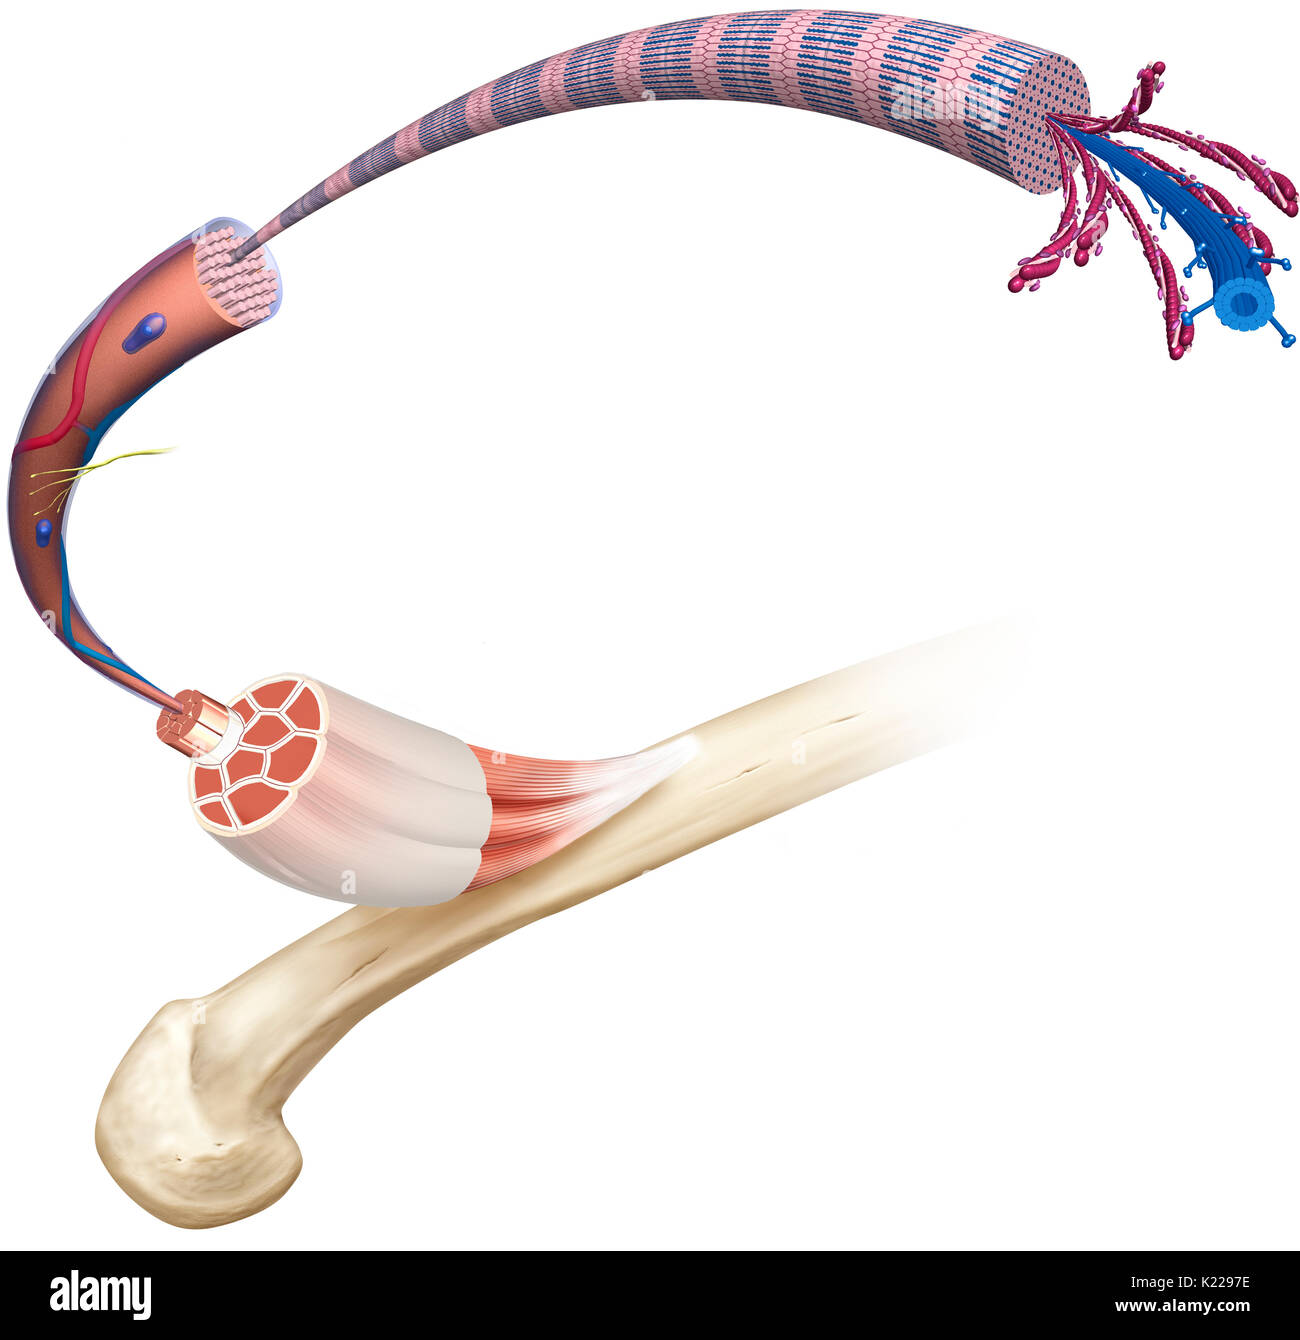 Esta imagen muestra la estructura de un músculo esquelético, revelando las fibras del músculo ciliar, la neurona motora, la fibra muscular y la myofibril. Foto de stock